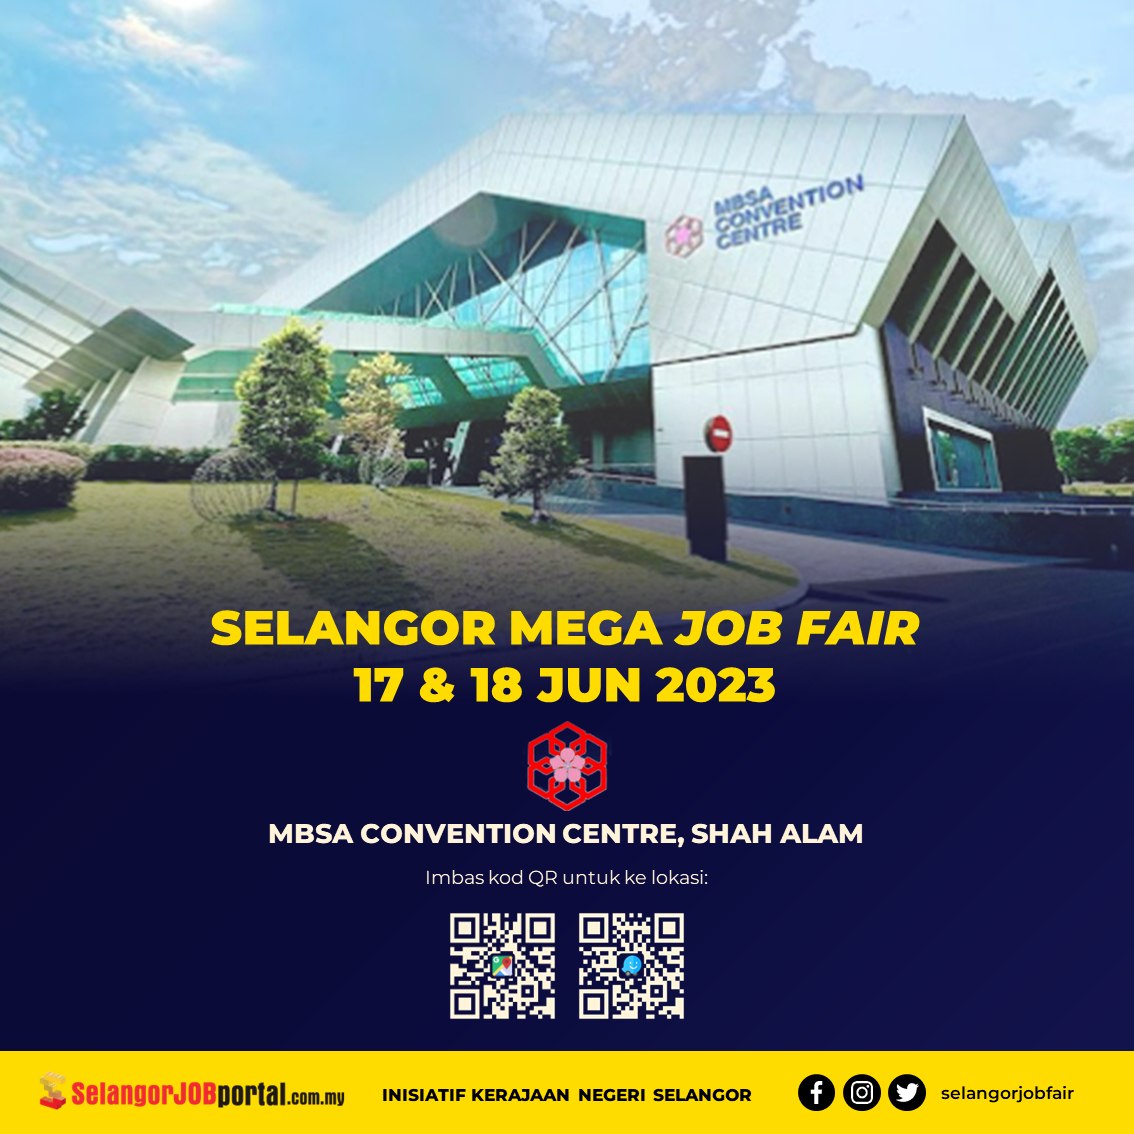 Selangor Job Fair 2023